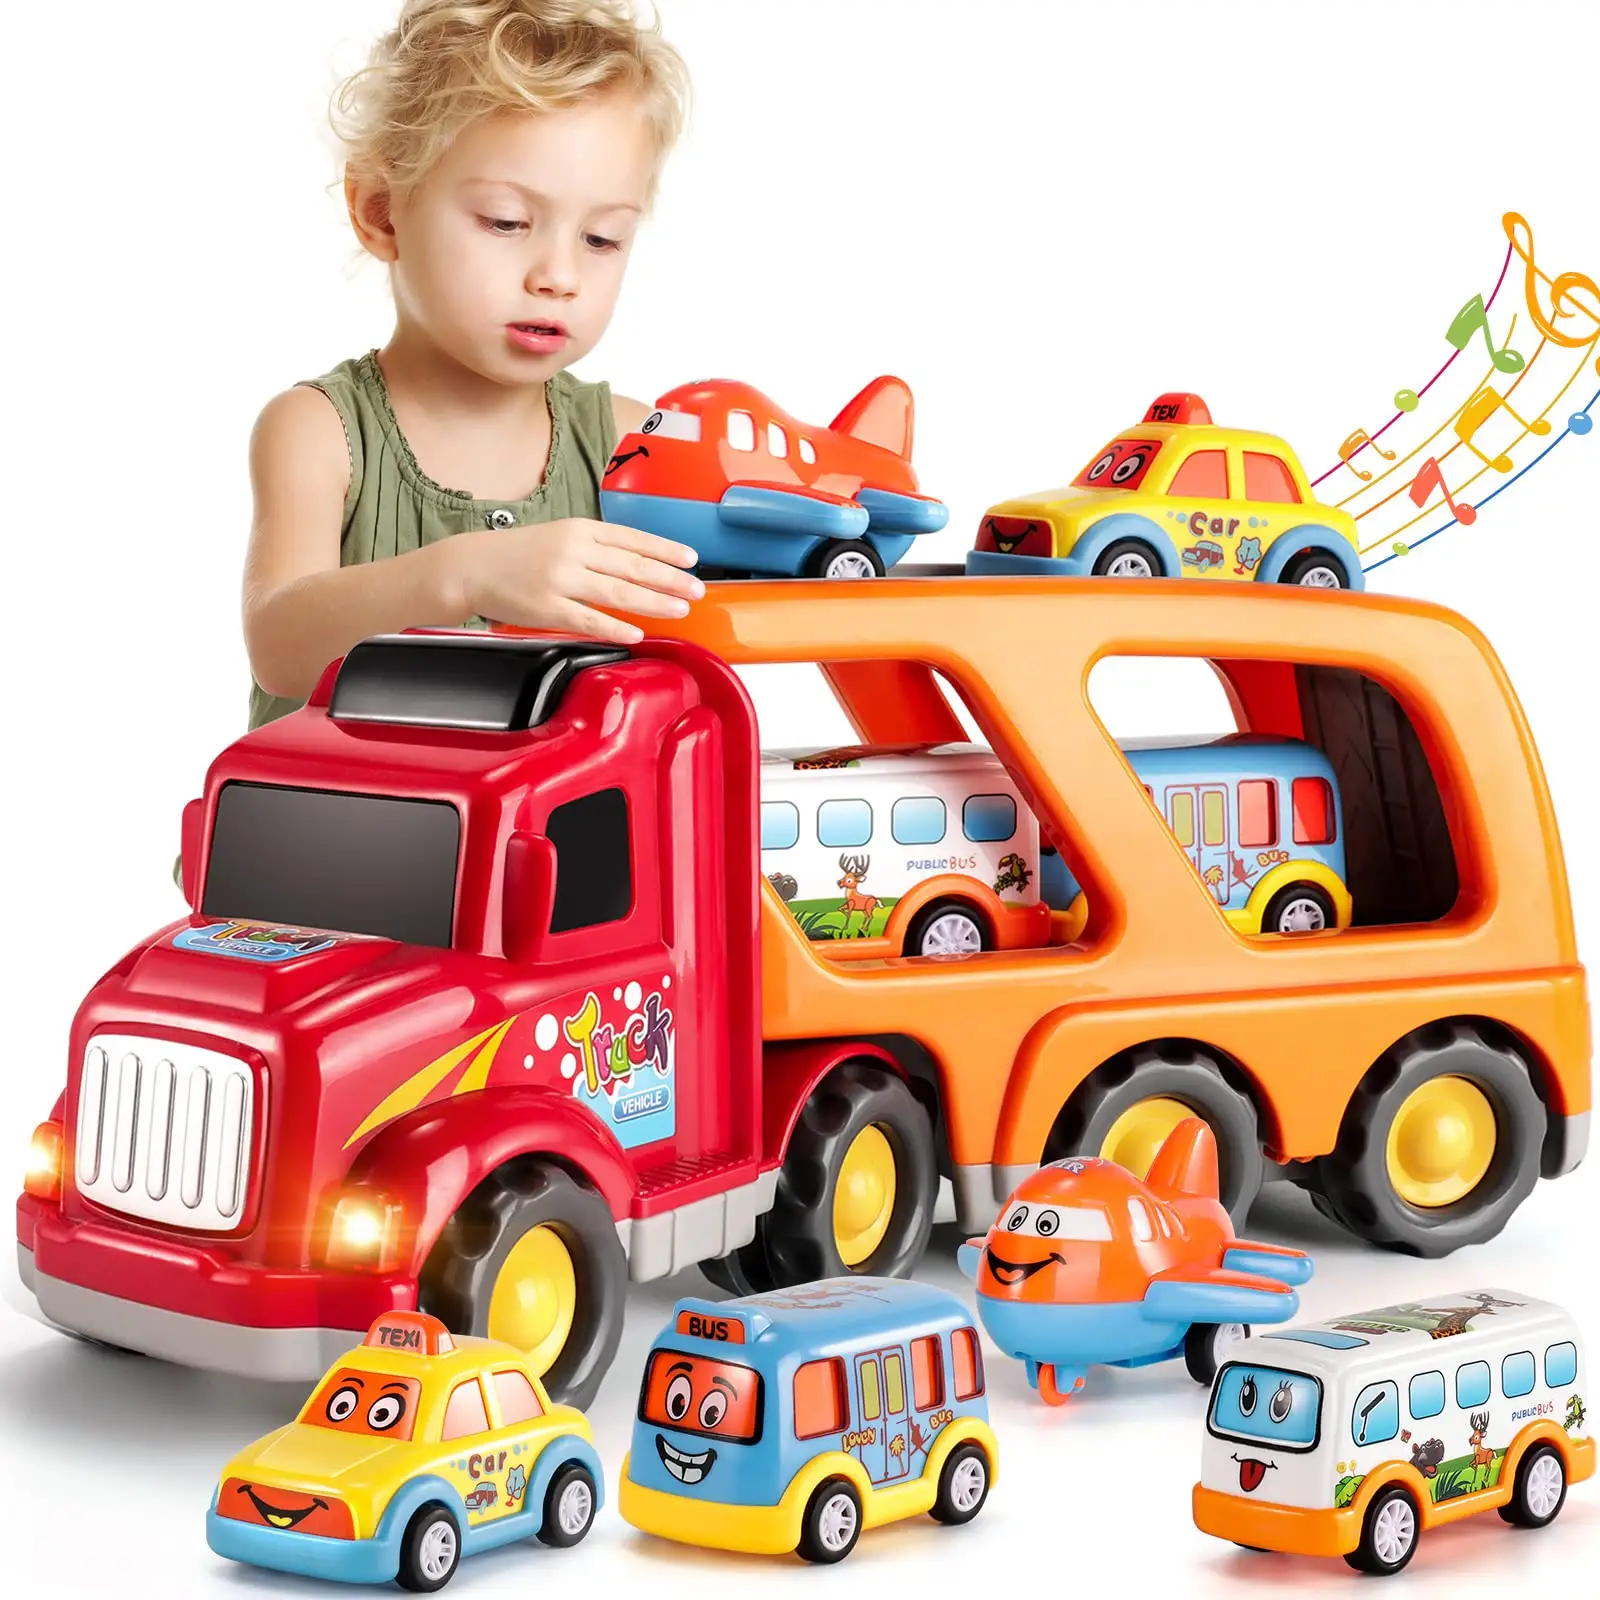 รถขนส่งสำหรับเด็กวัยหัดเดินของเล่น5 in 1สำหรับ3-9ของเล่นรถชุดแรงเสียดทานสำหรับเด็กของขวัญคริสต์มาสที่ดีที่สุด